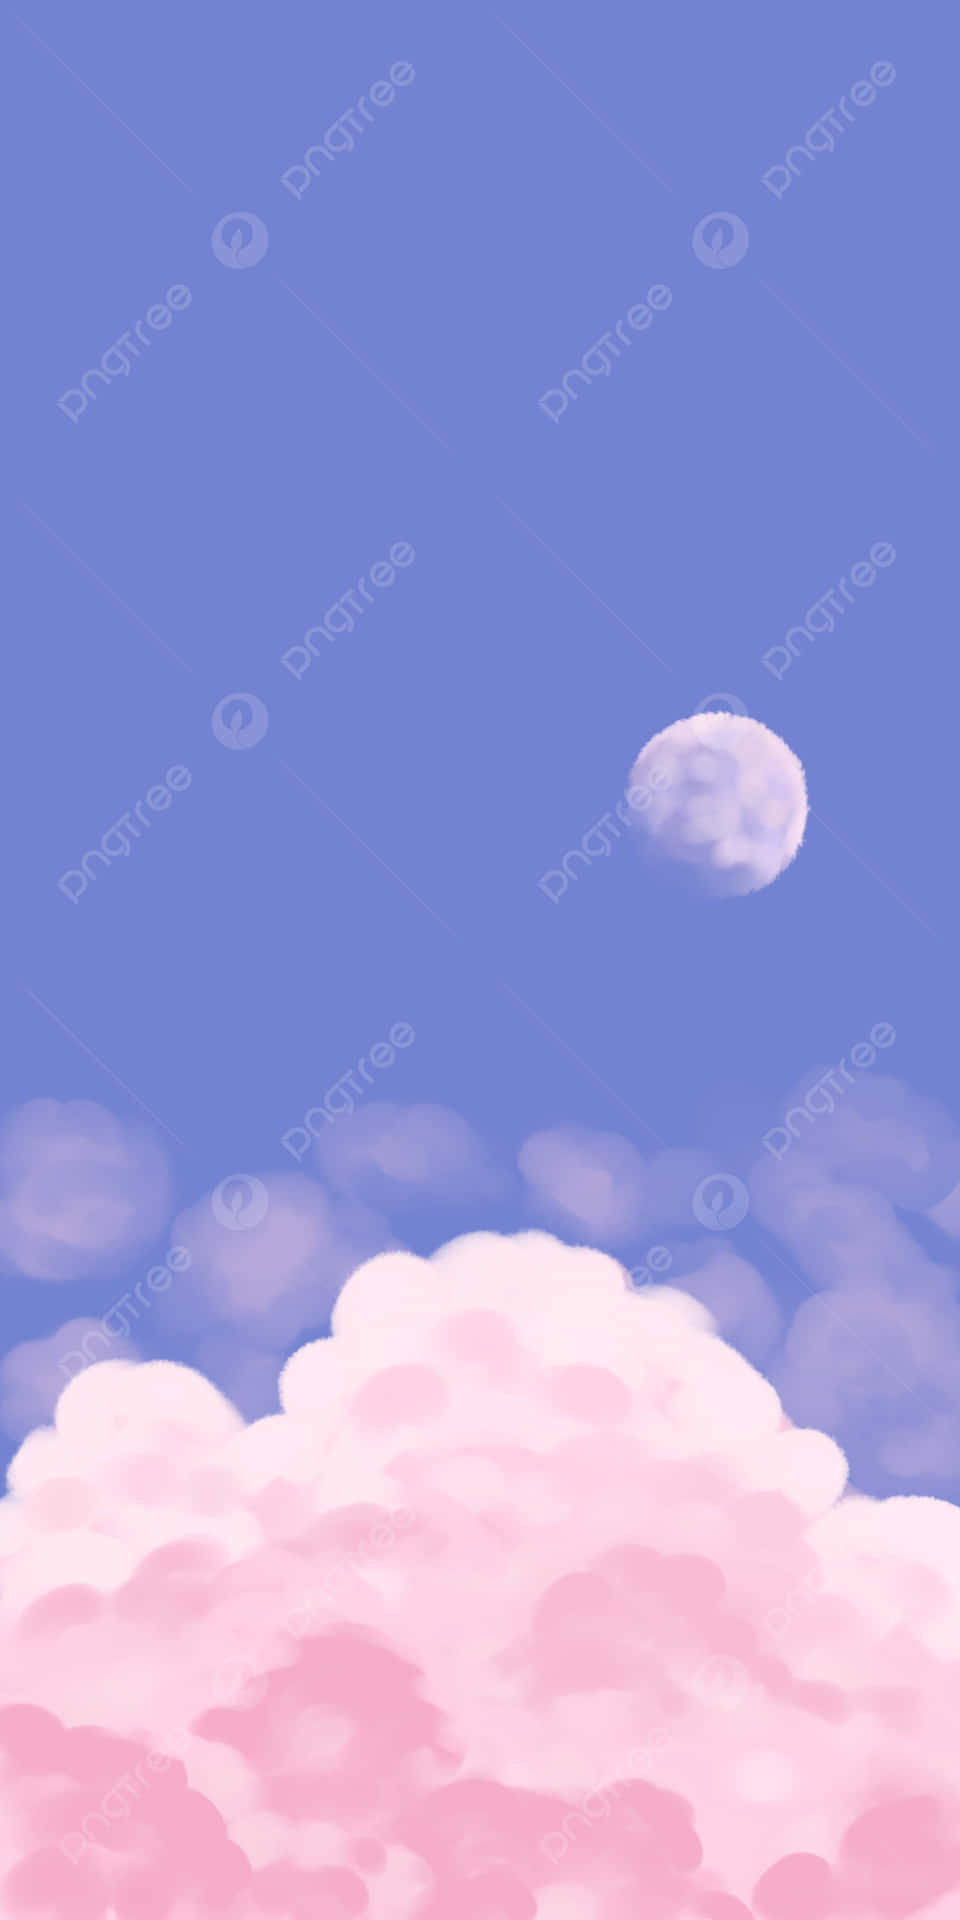 Cielopastello Con Nuvole Rosa Pallido E Azzurro Cielo Sfondo